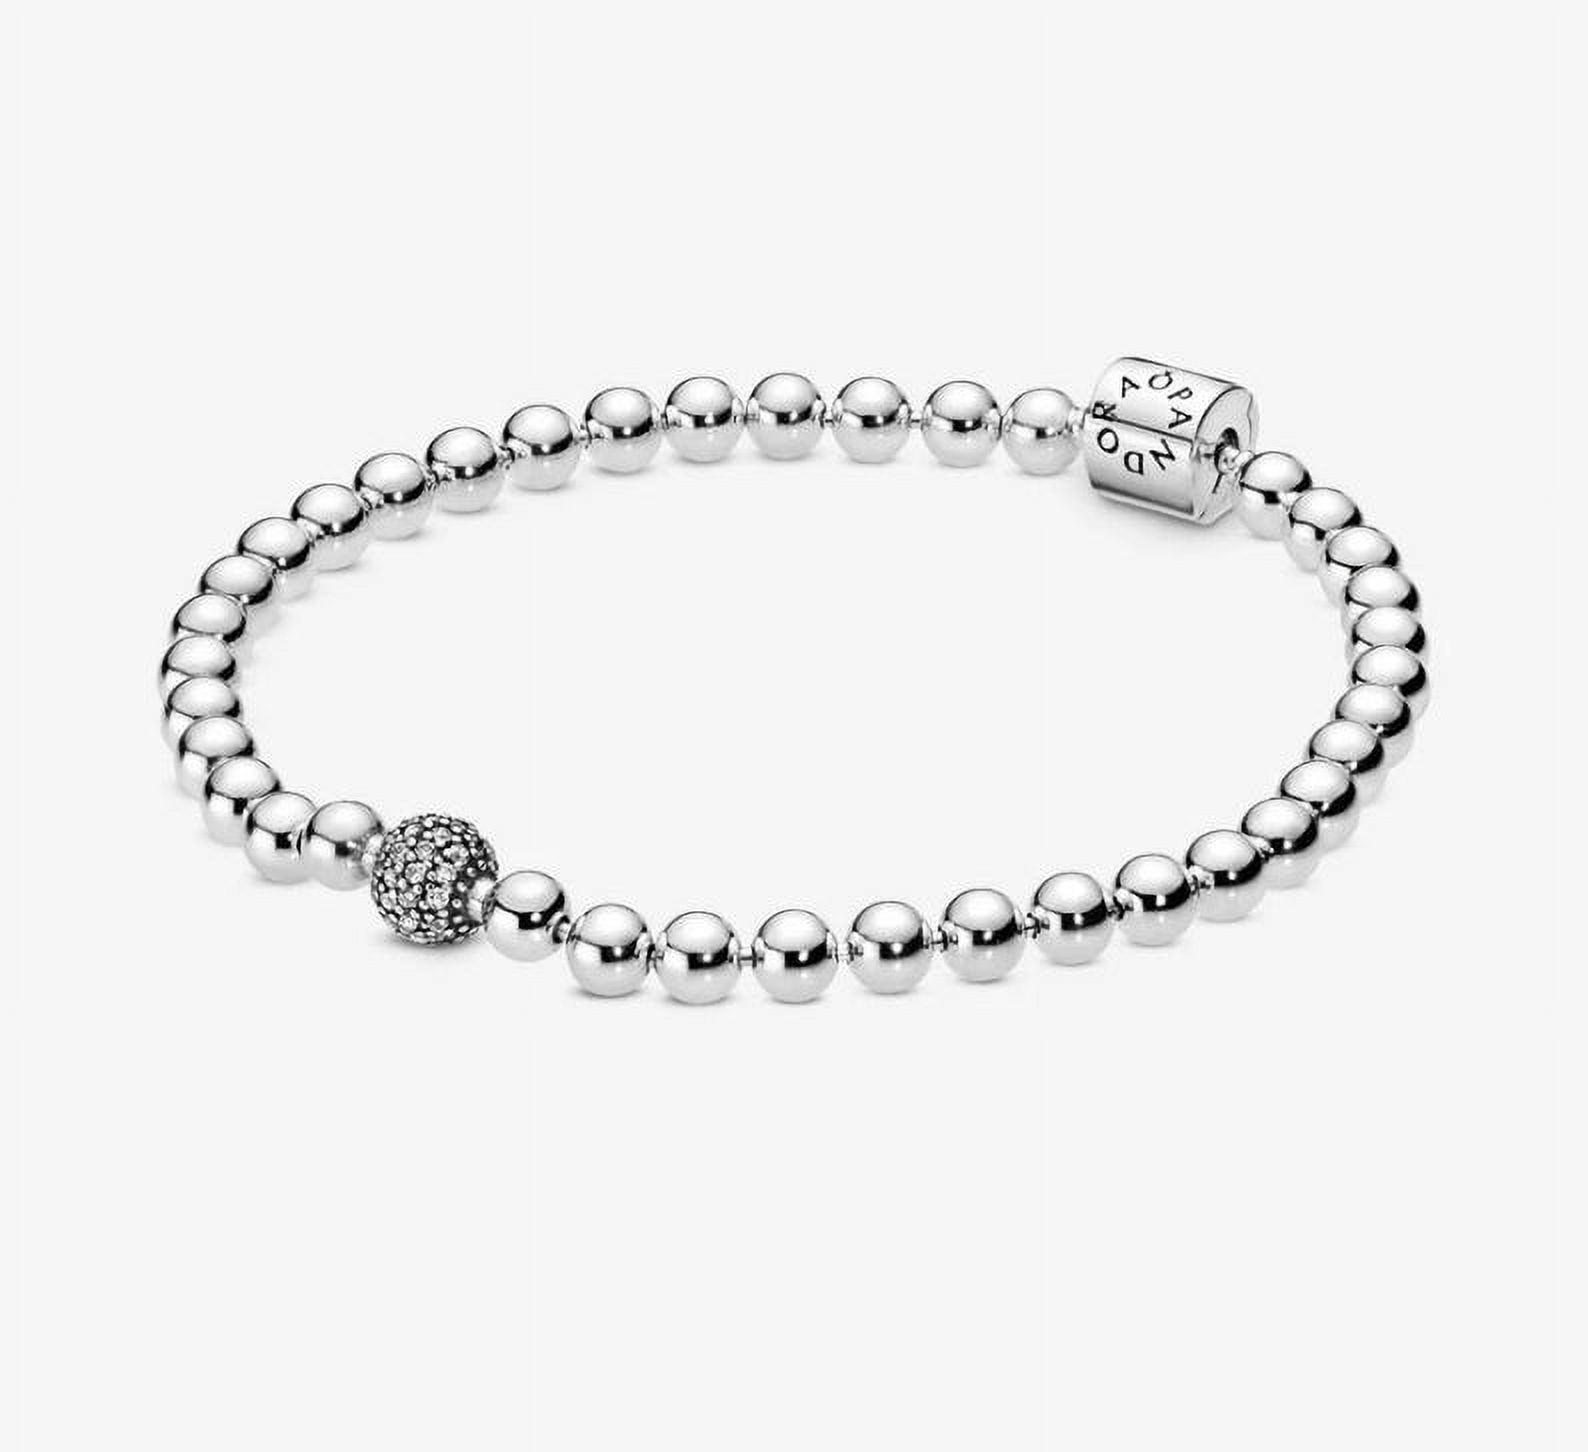 PANDORA Beads & Pave Bracelet Size 19 - 598342CZ-19 - image 2 of 6